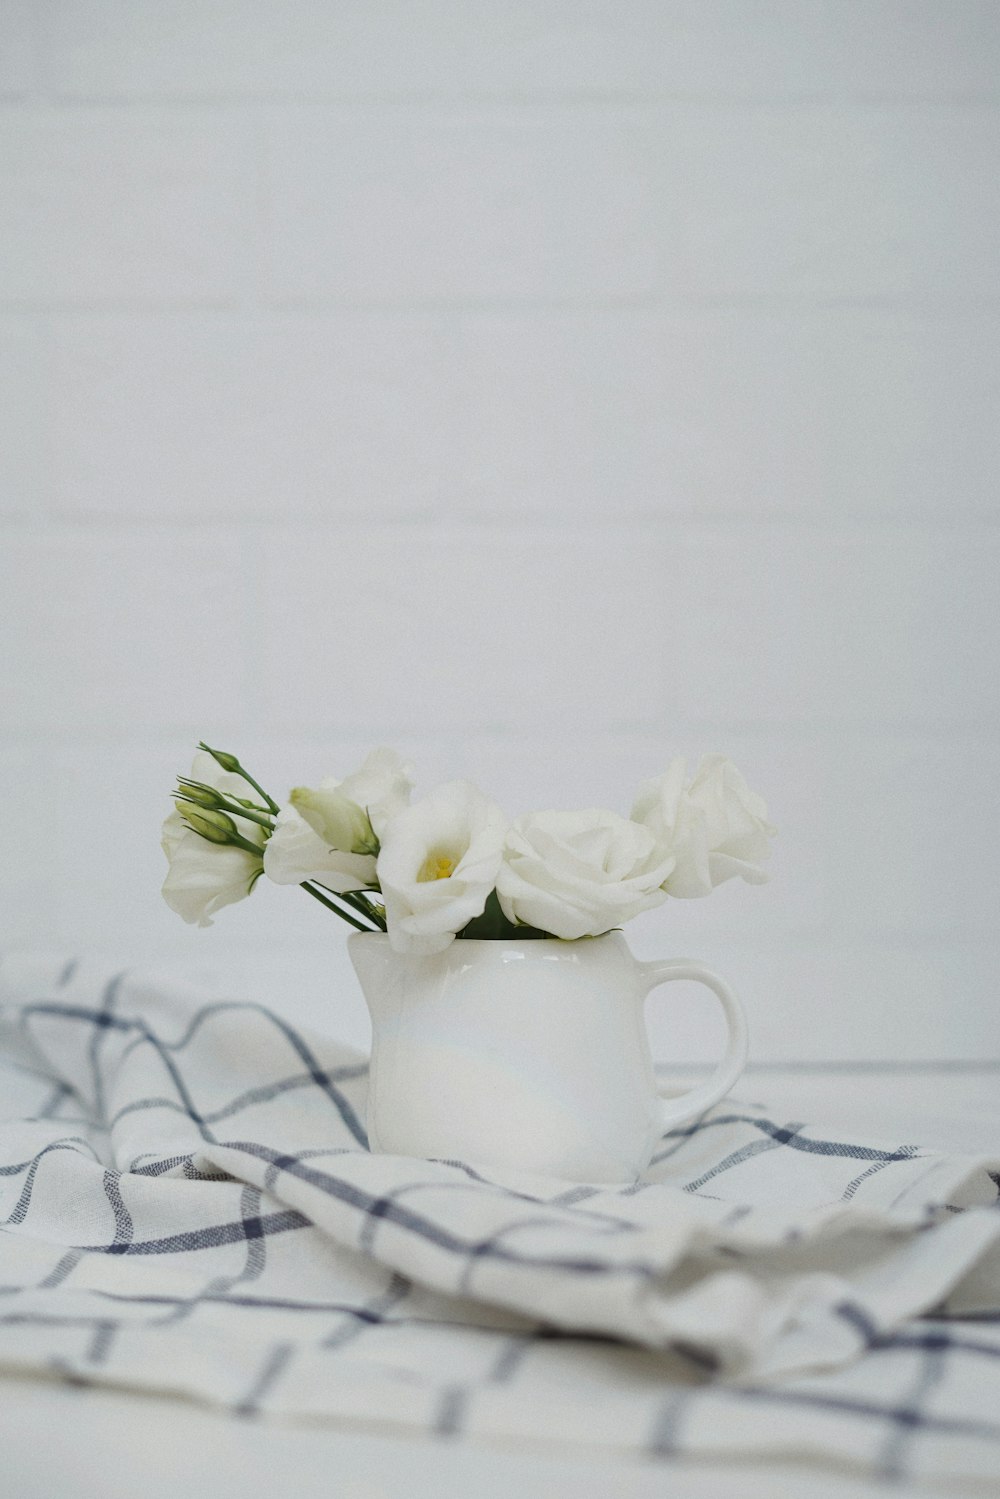 흰색 세라믹 꽃병에 흰 꽃